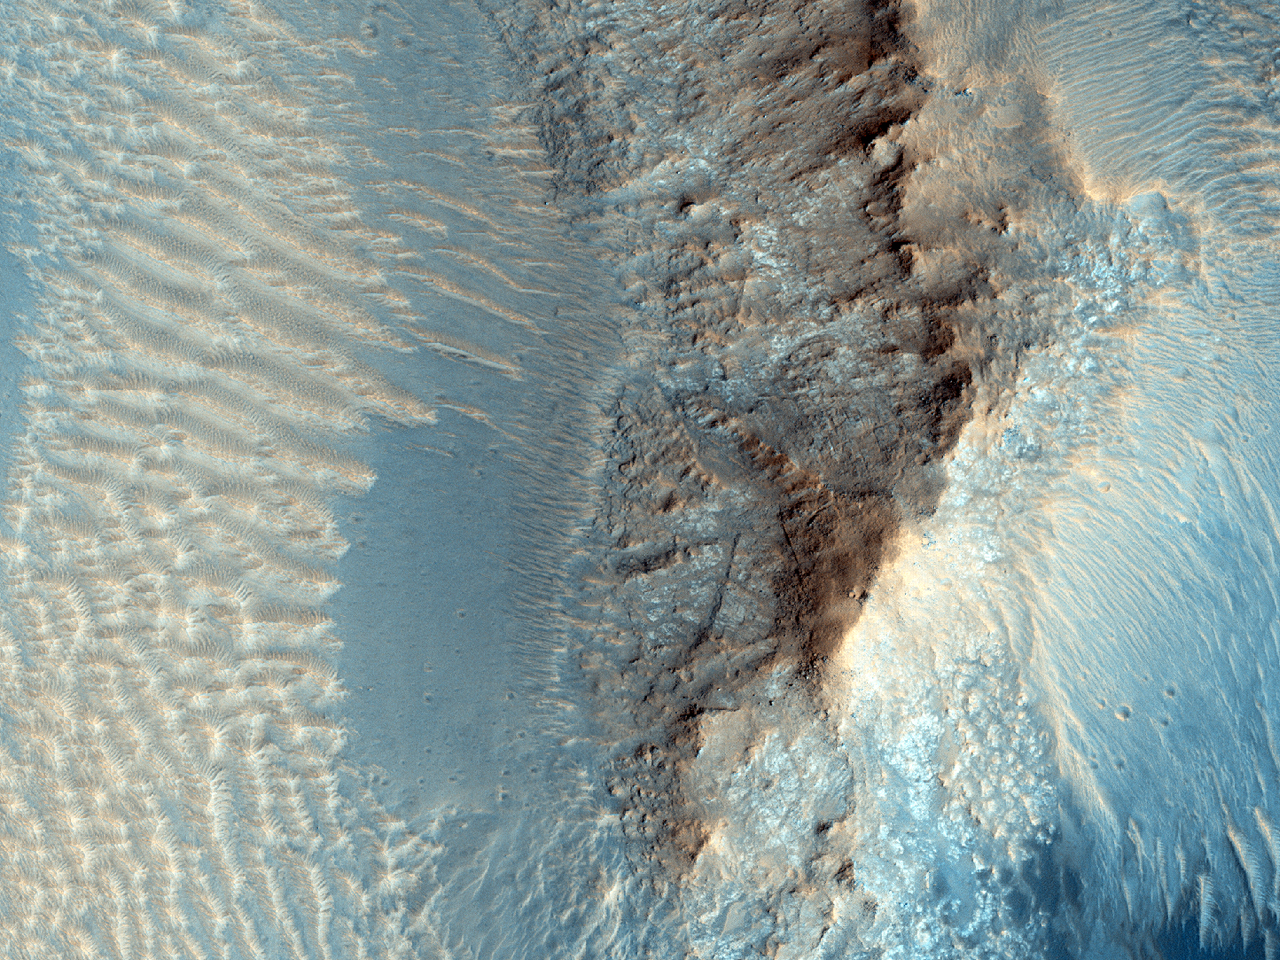 Merkezi yükselmenin yakınındaki krater zemininde bulunan rüsubatlar